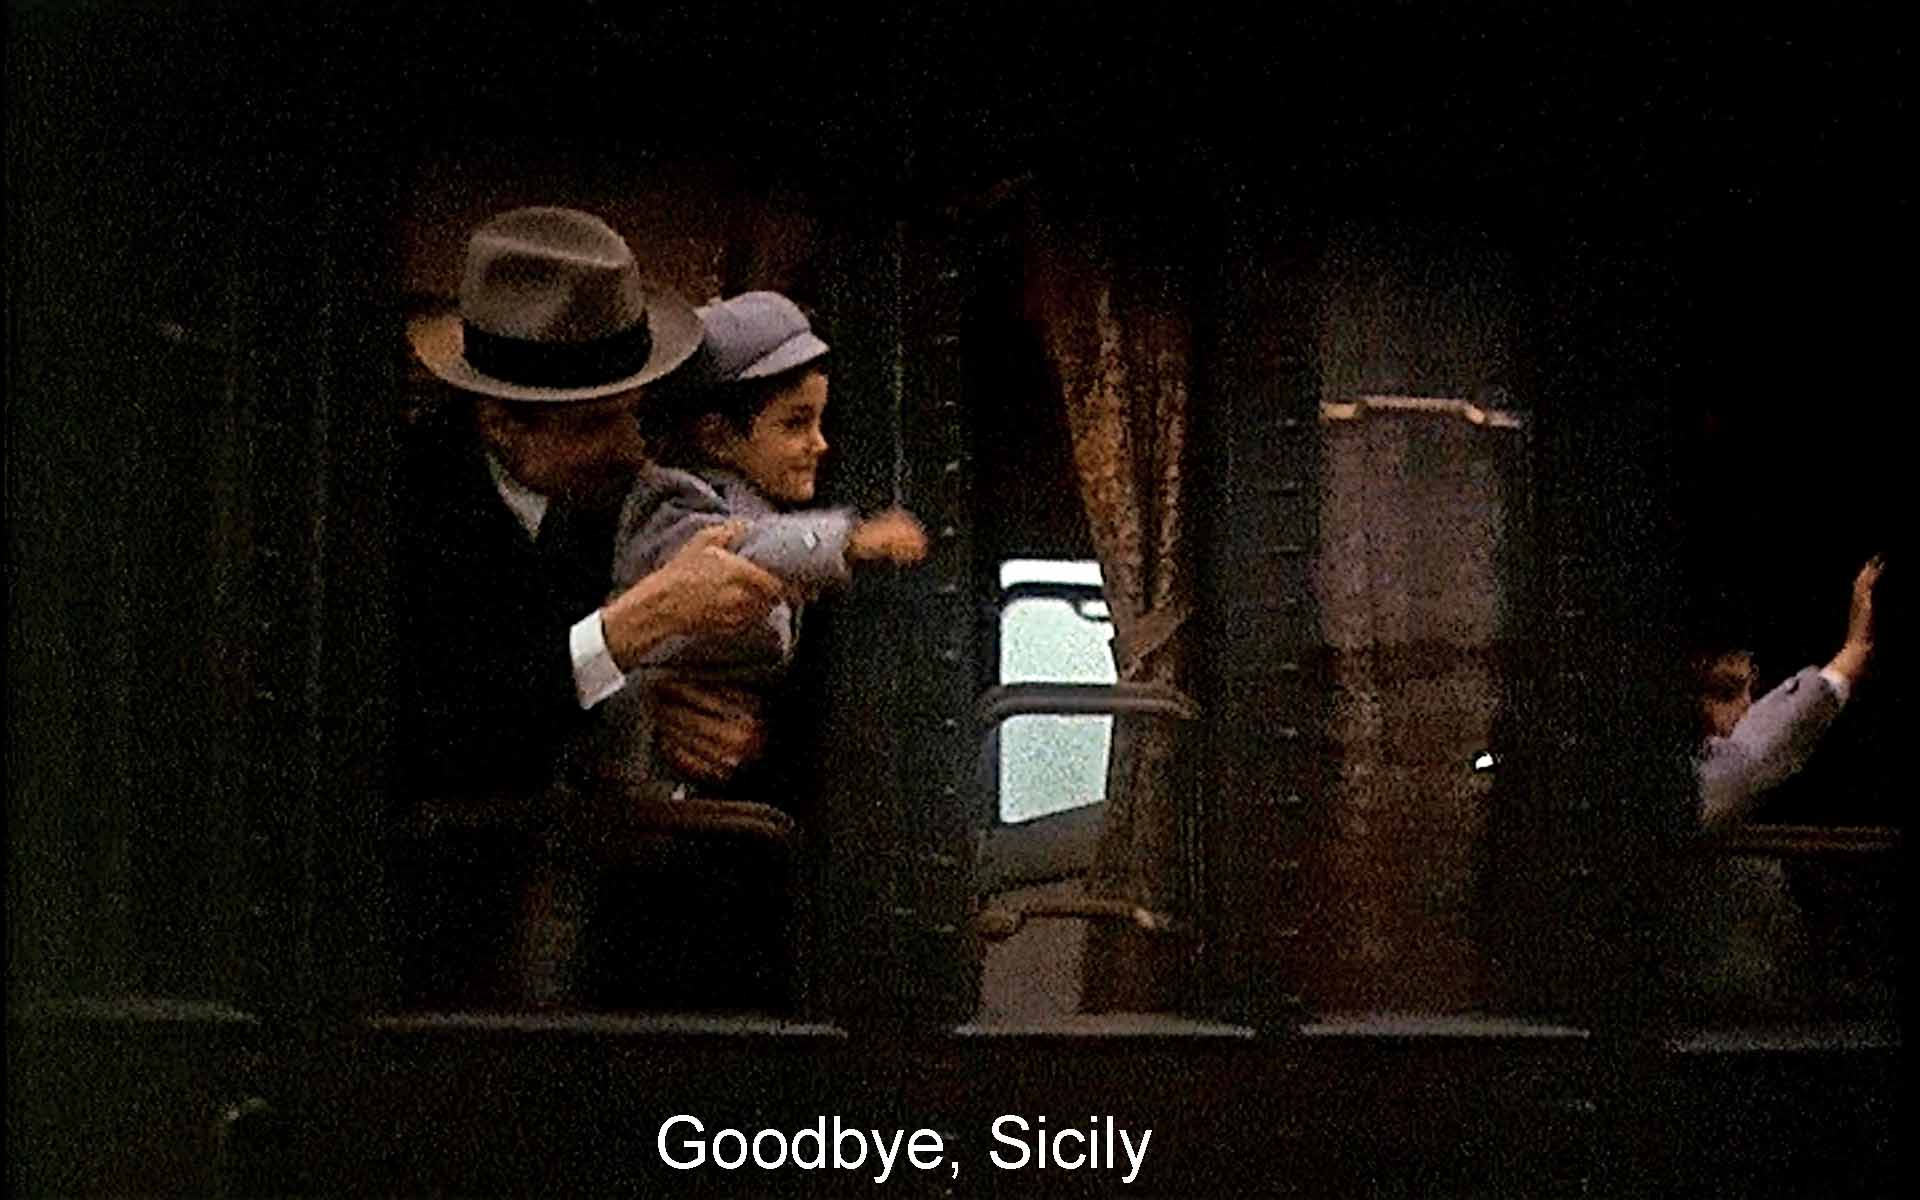 Goodbye, Sicily